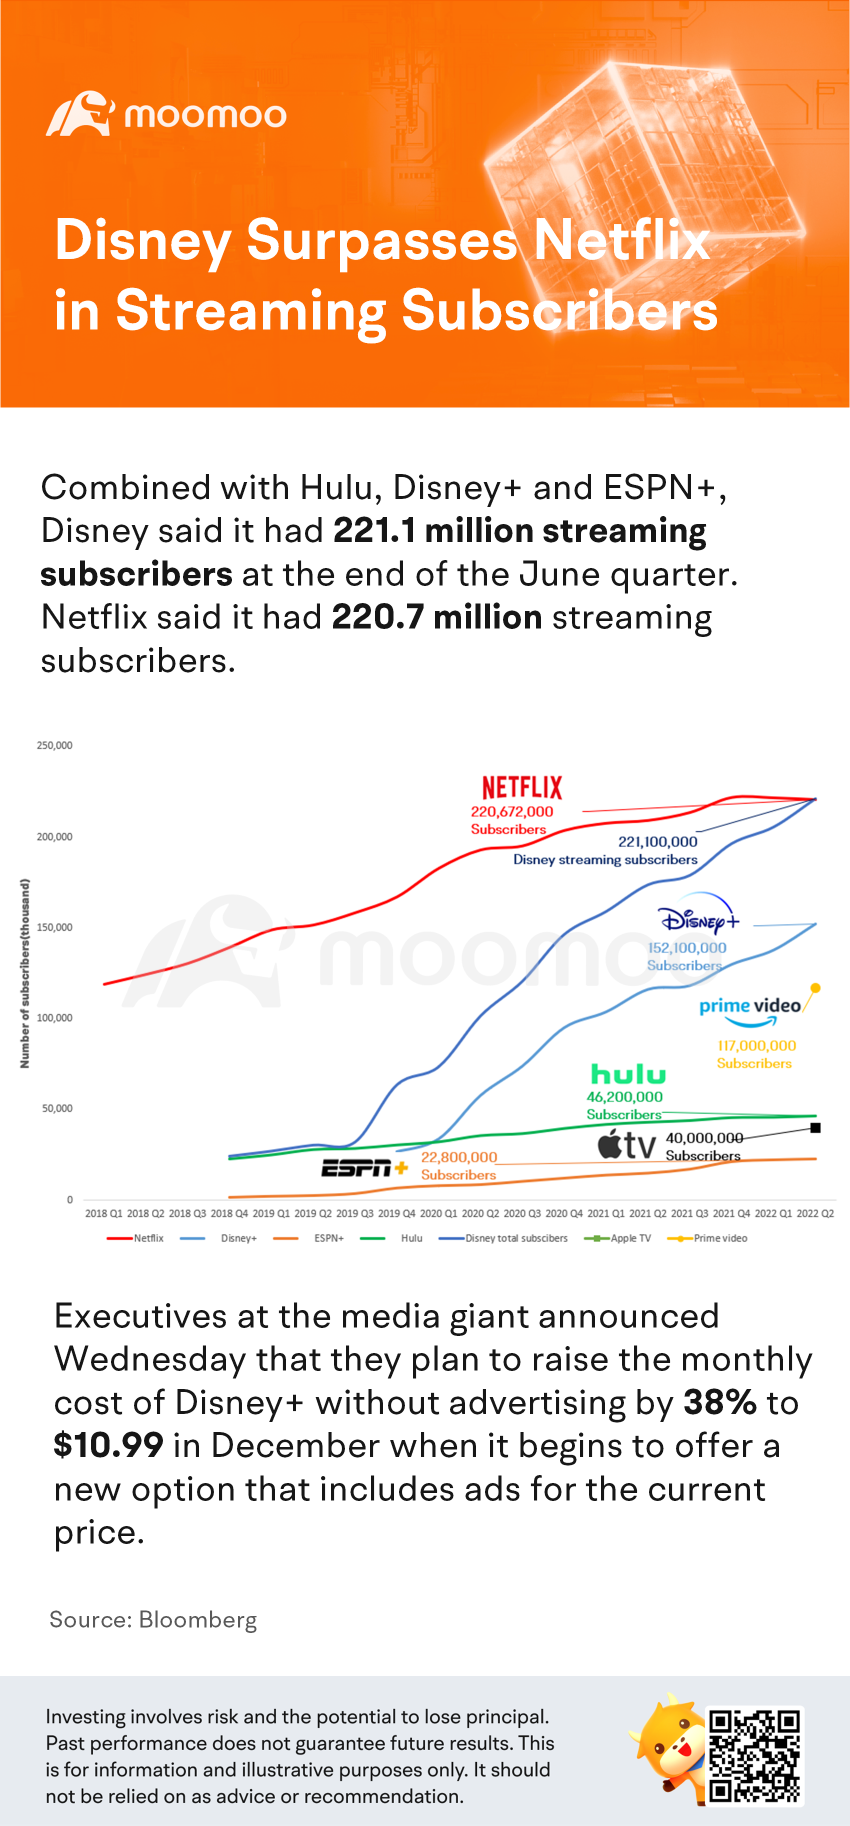 Disney surpasses Netflix in streaming subscribers